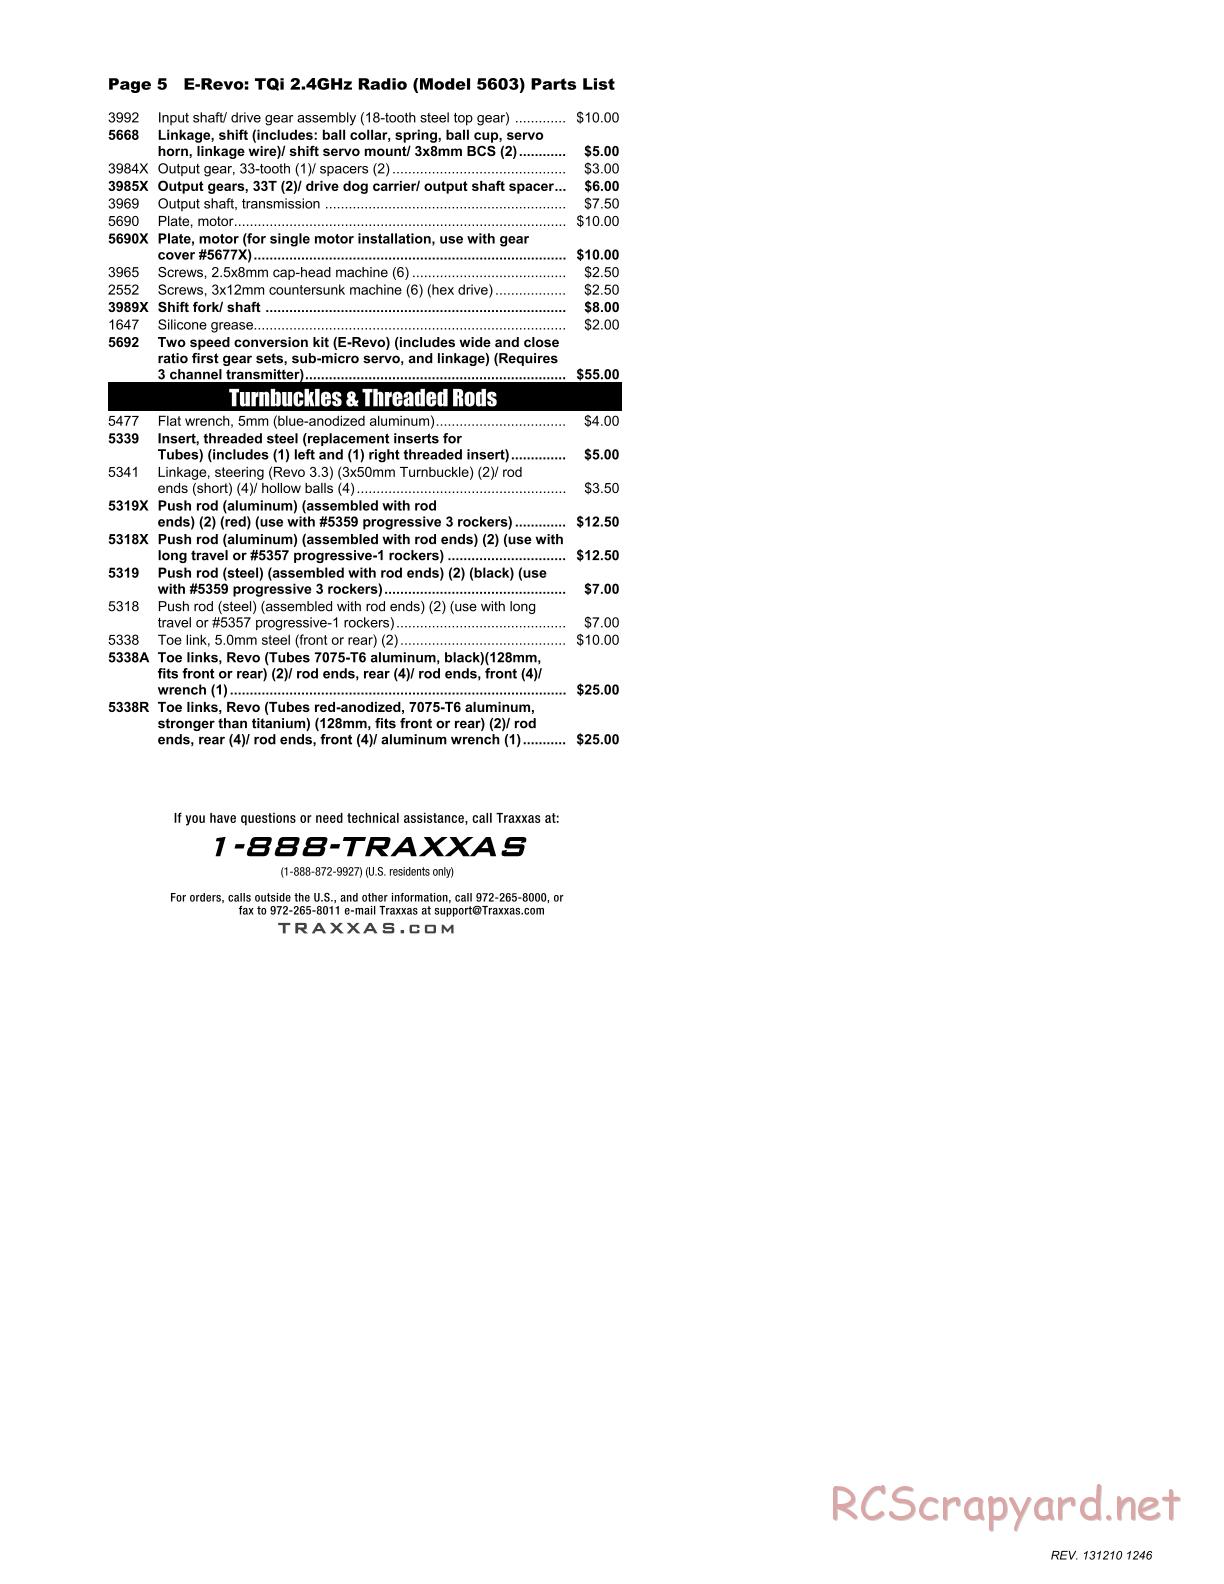 Traxxas - E-Revo (2010) - Parts List - Page 5